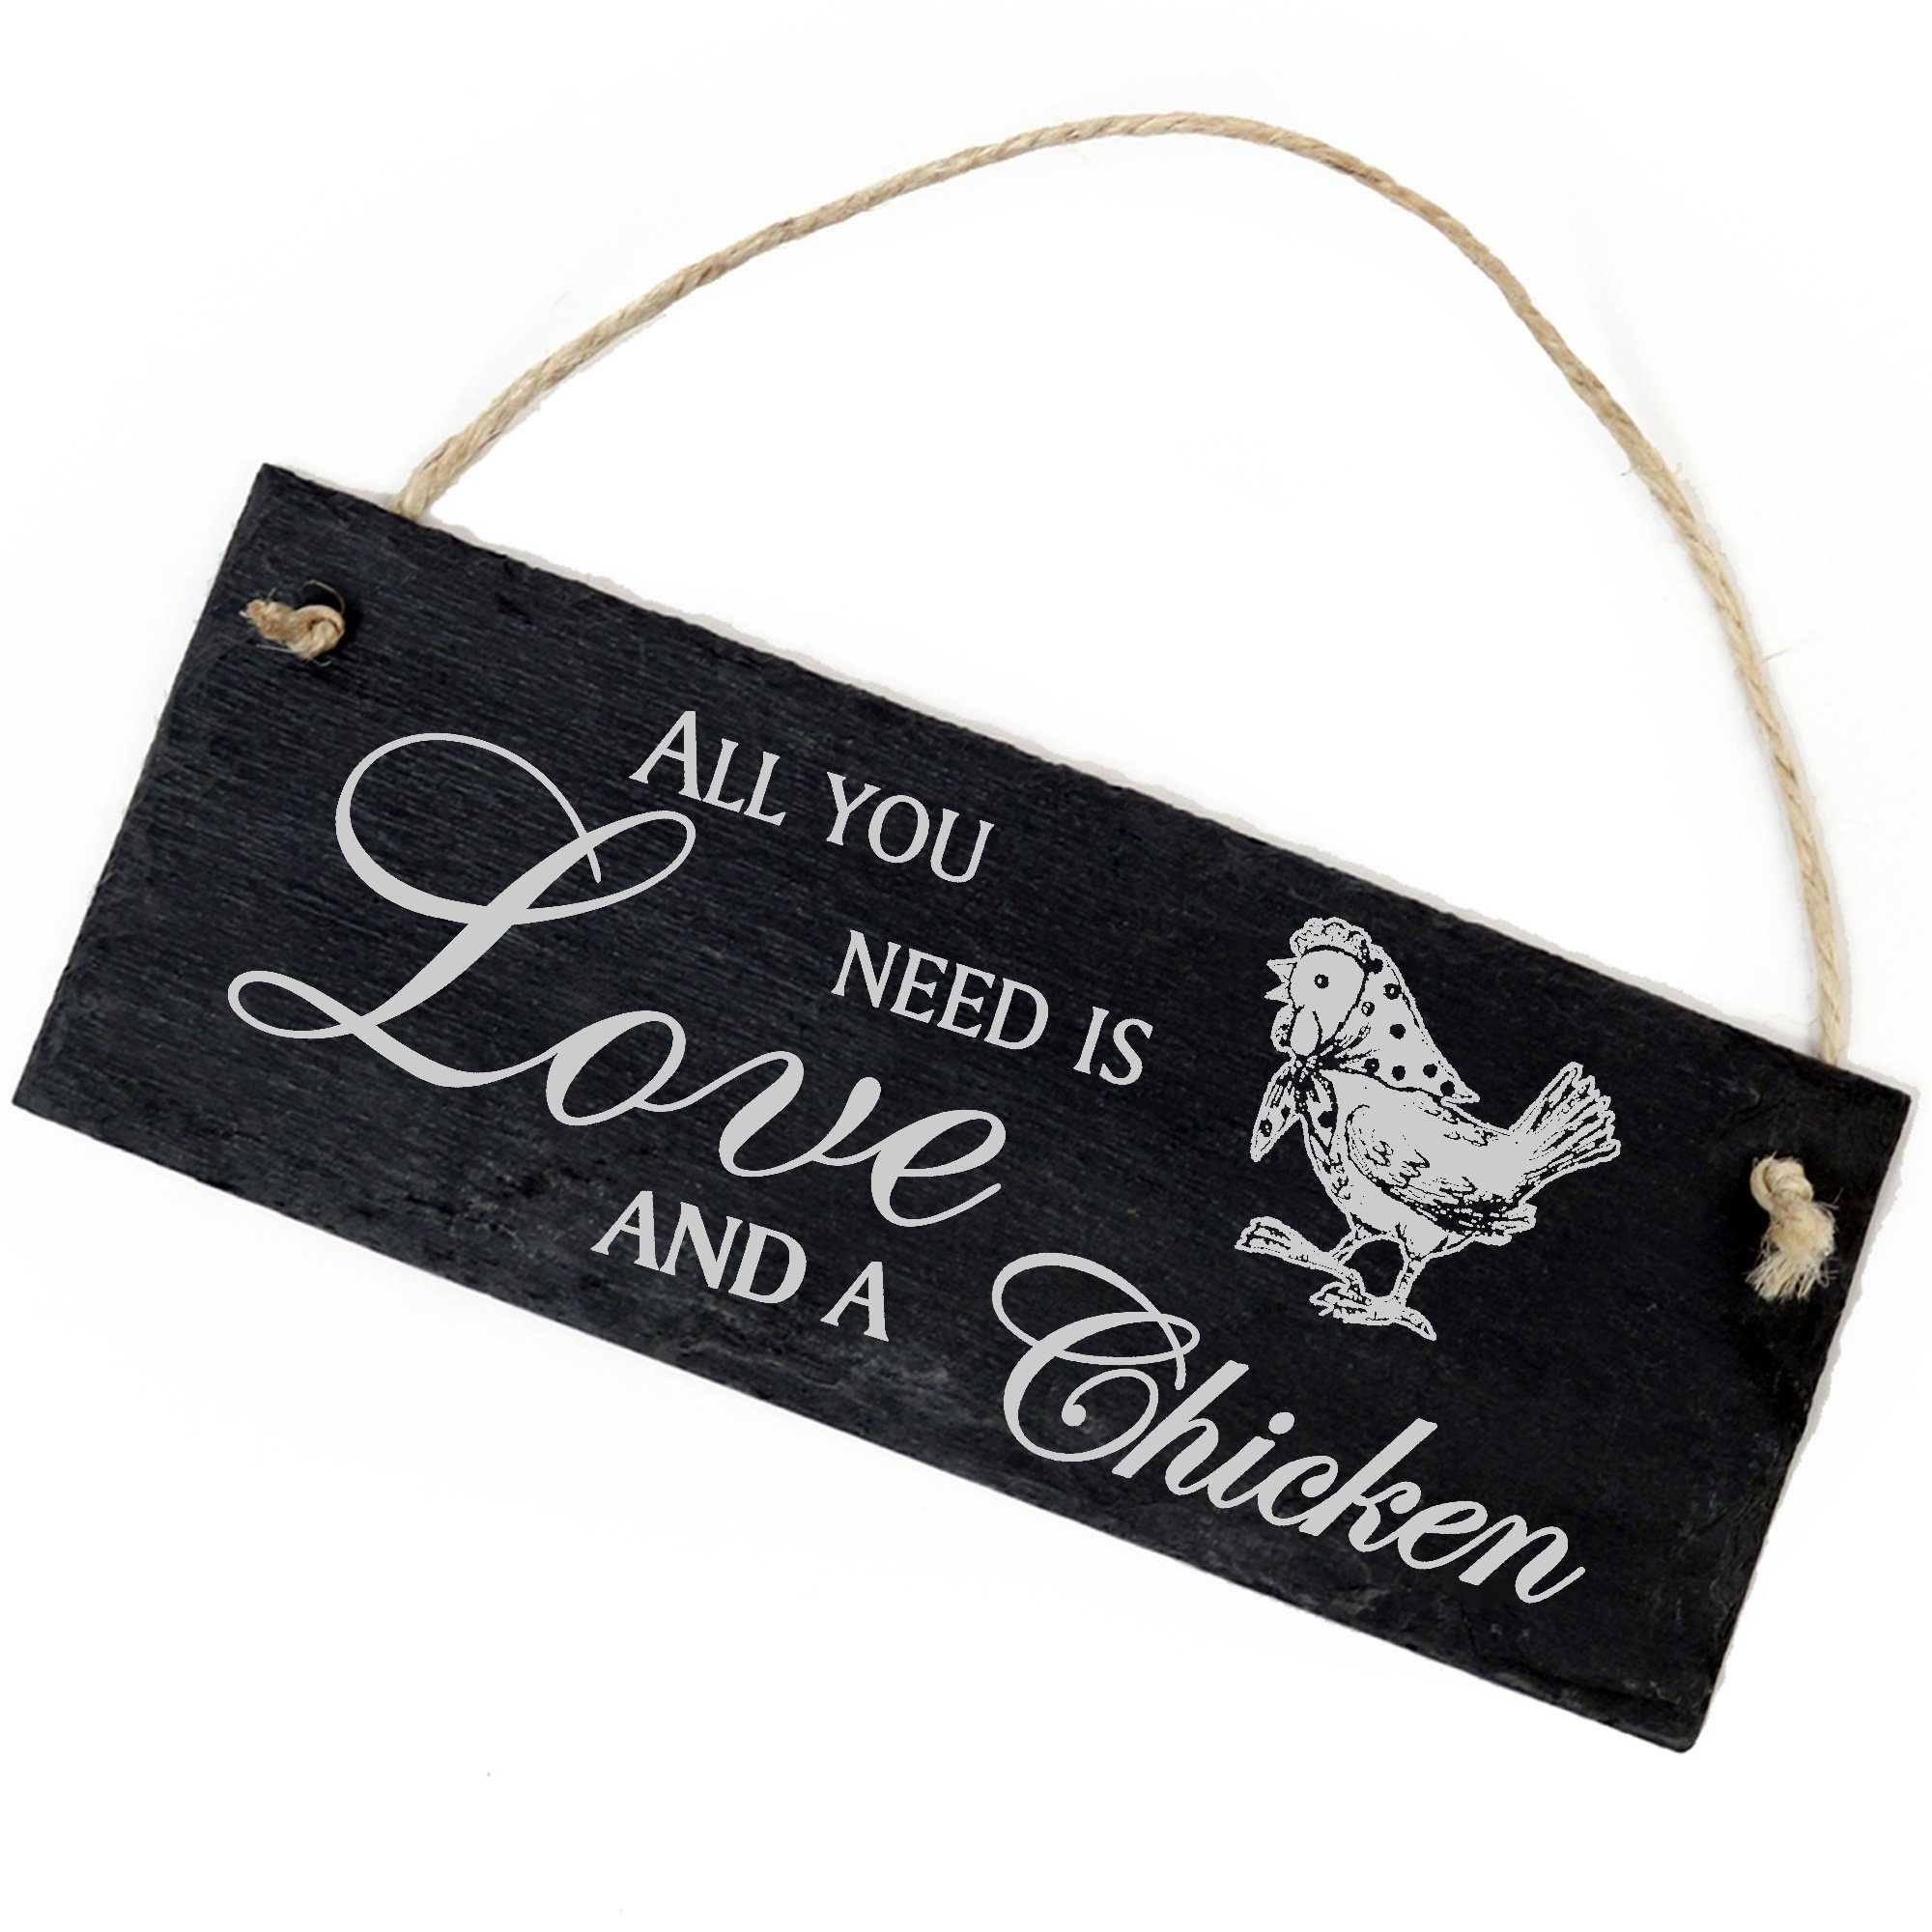 Dekolando Hängedekoration Huhn mit Kopftuch 22x8cm All you need is Love and a Chicken